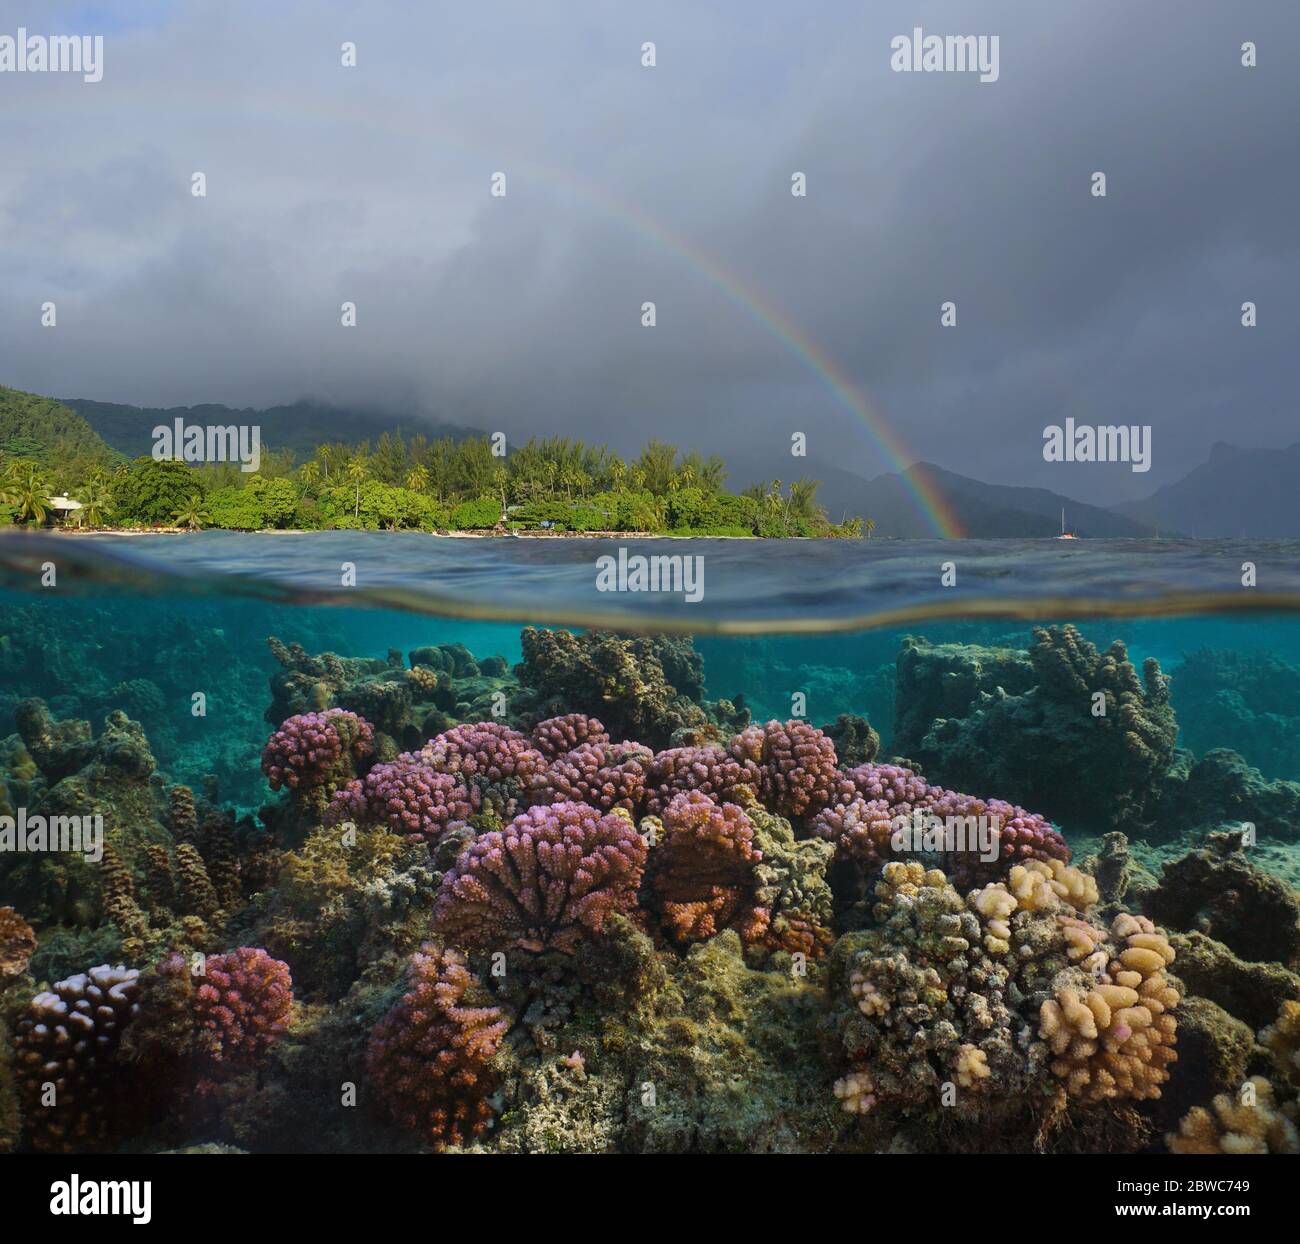 Arcobaleno nel cielo nuvoloso sulla costa tropicale e corallo colorato sott'acqua, vista split sopra l'acqua, Polinesia francese, isola di Huahine, oceano Pacifico Foto Stock